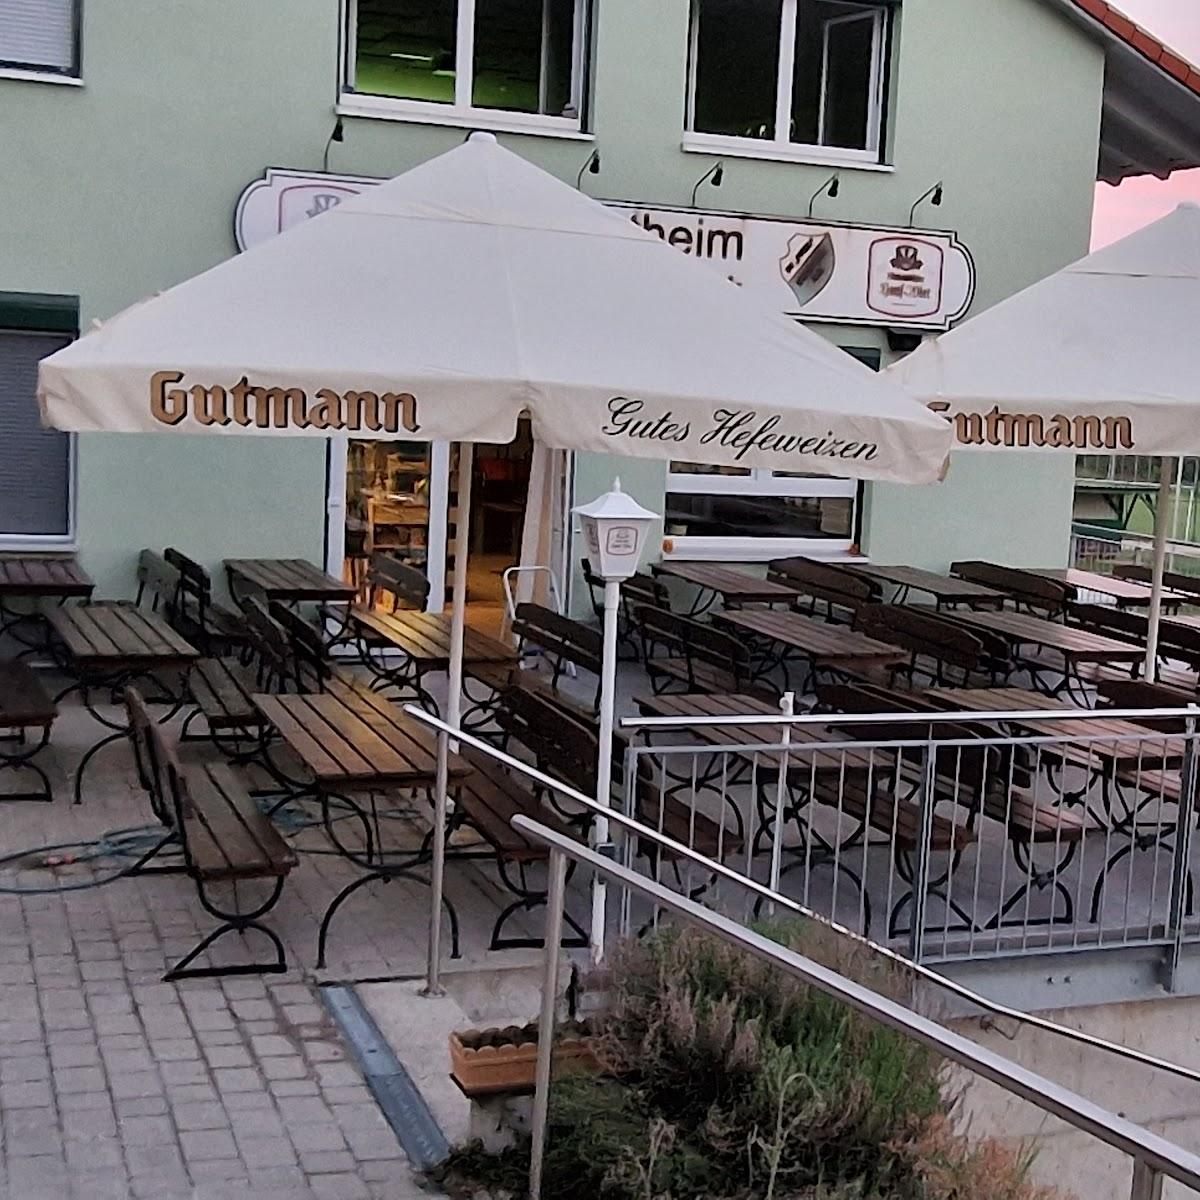 Restaurant "Sport Gaststätte Pfeil" in Burk